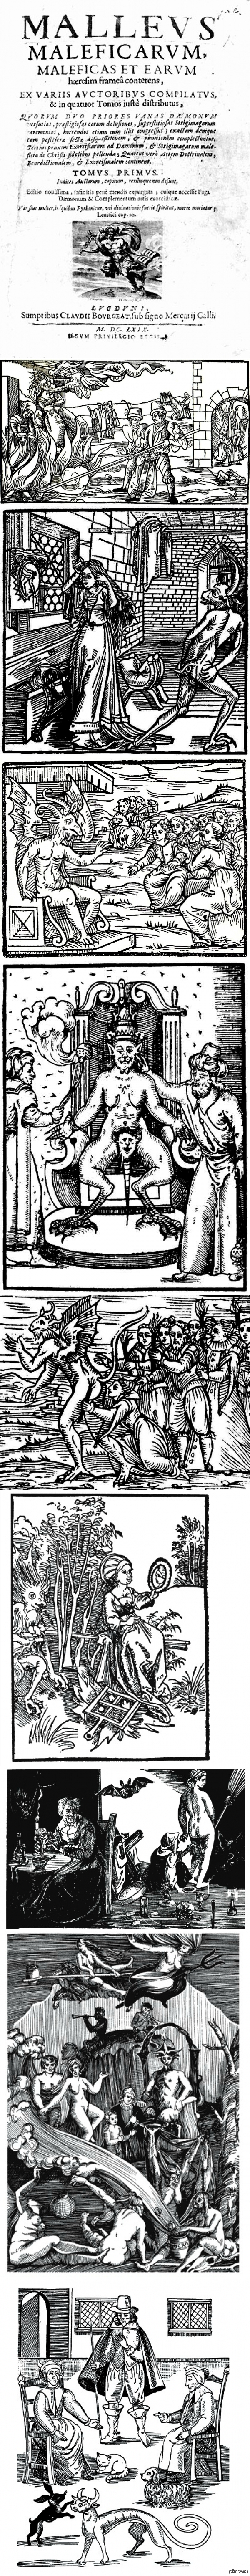   (Malleus Maleficarum) 1486 .